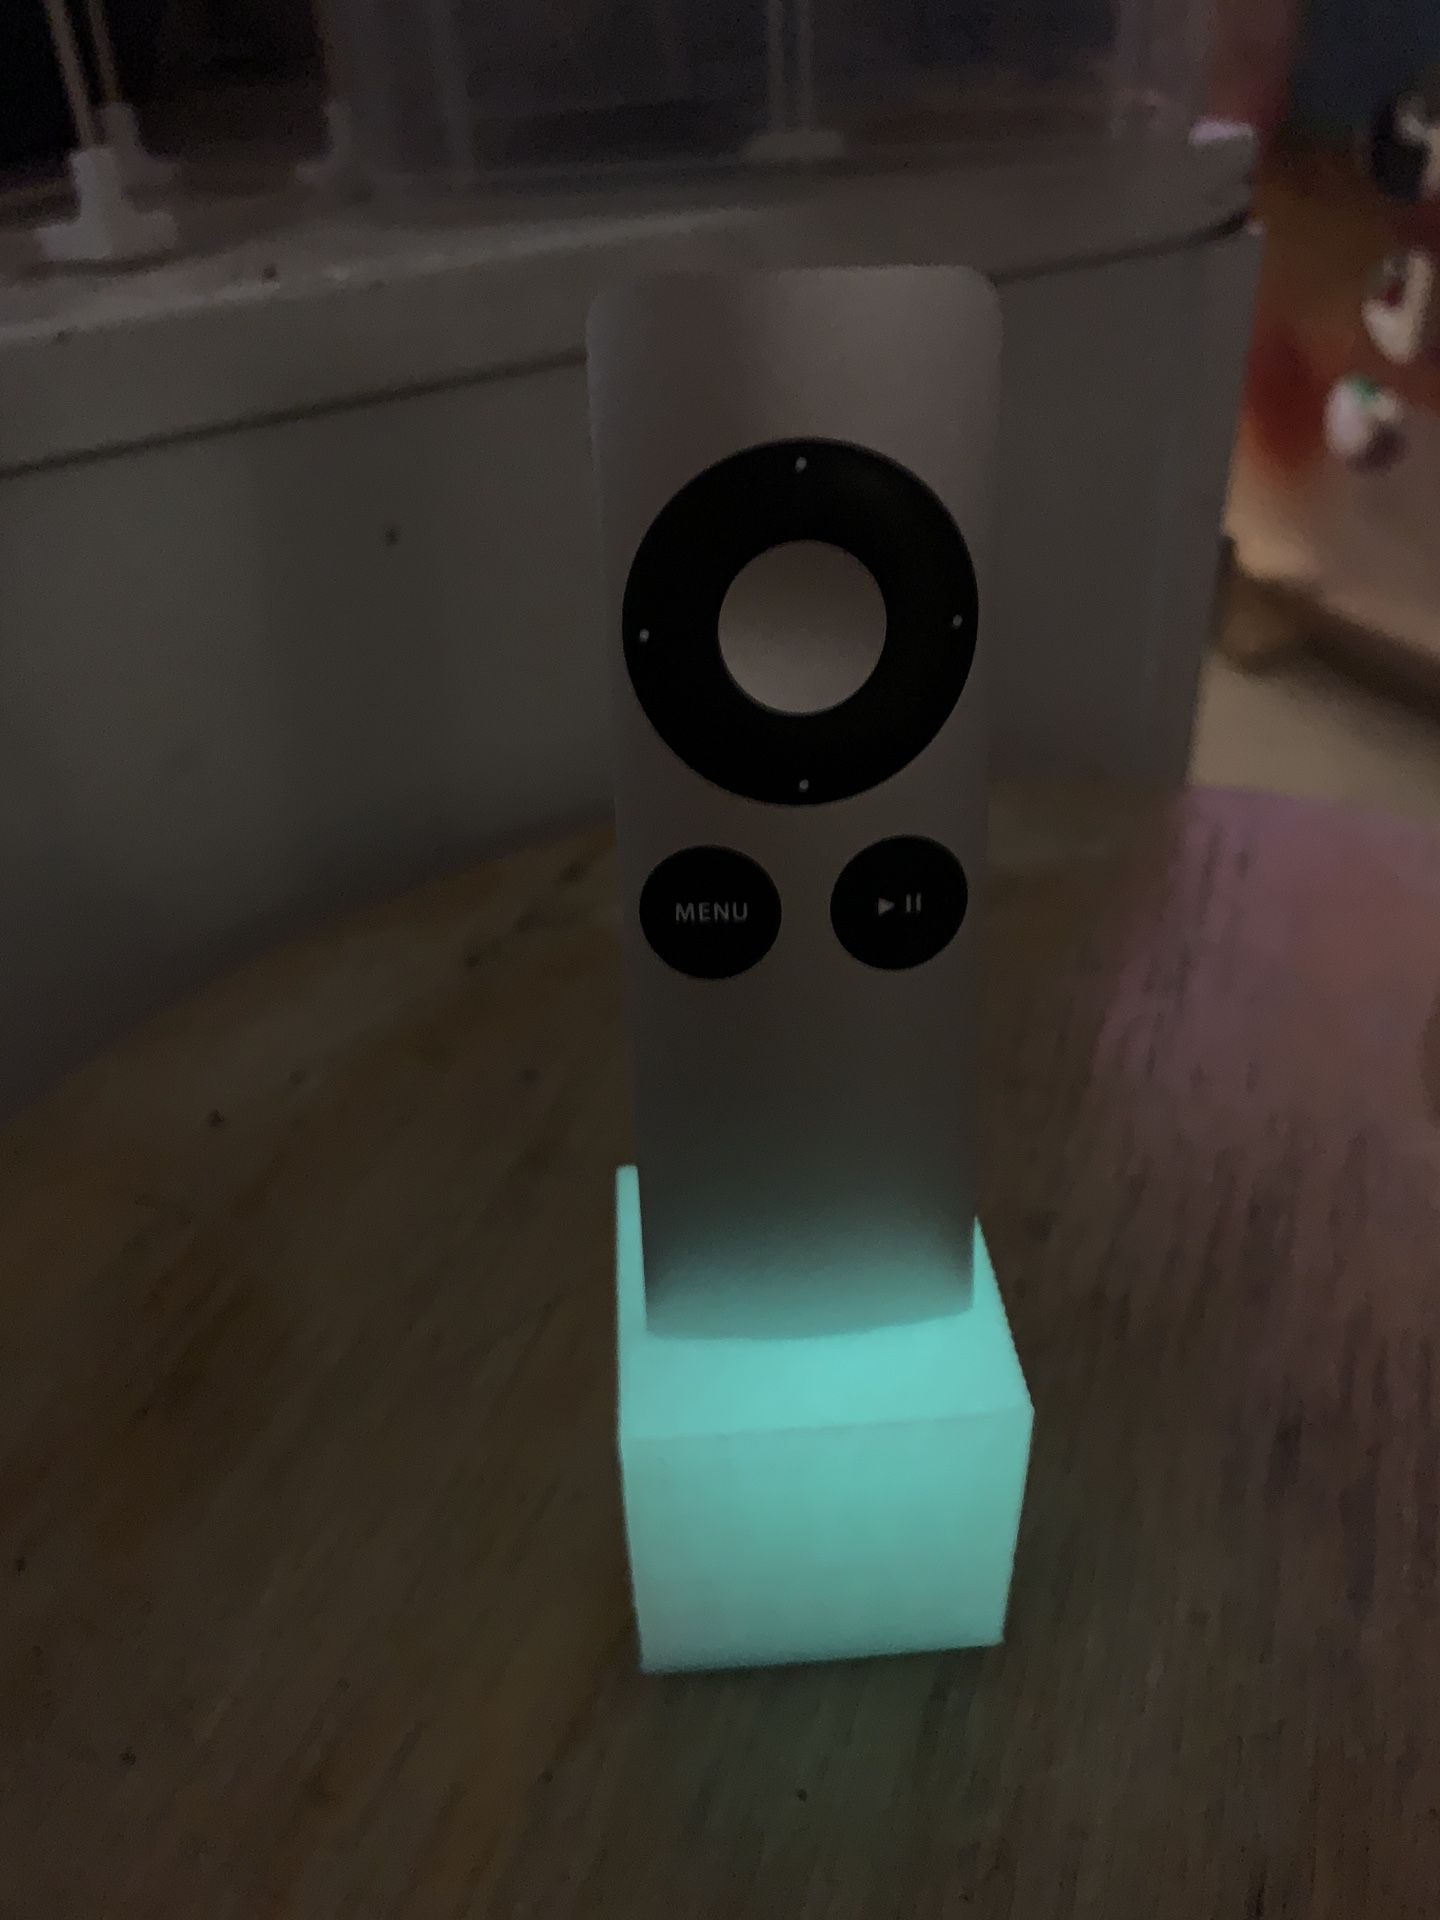 Apple TV Remote stand—glows in dark